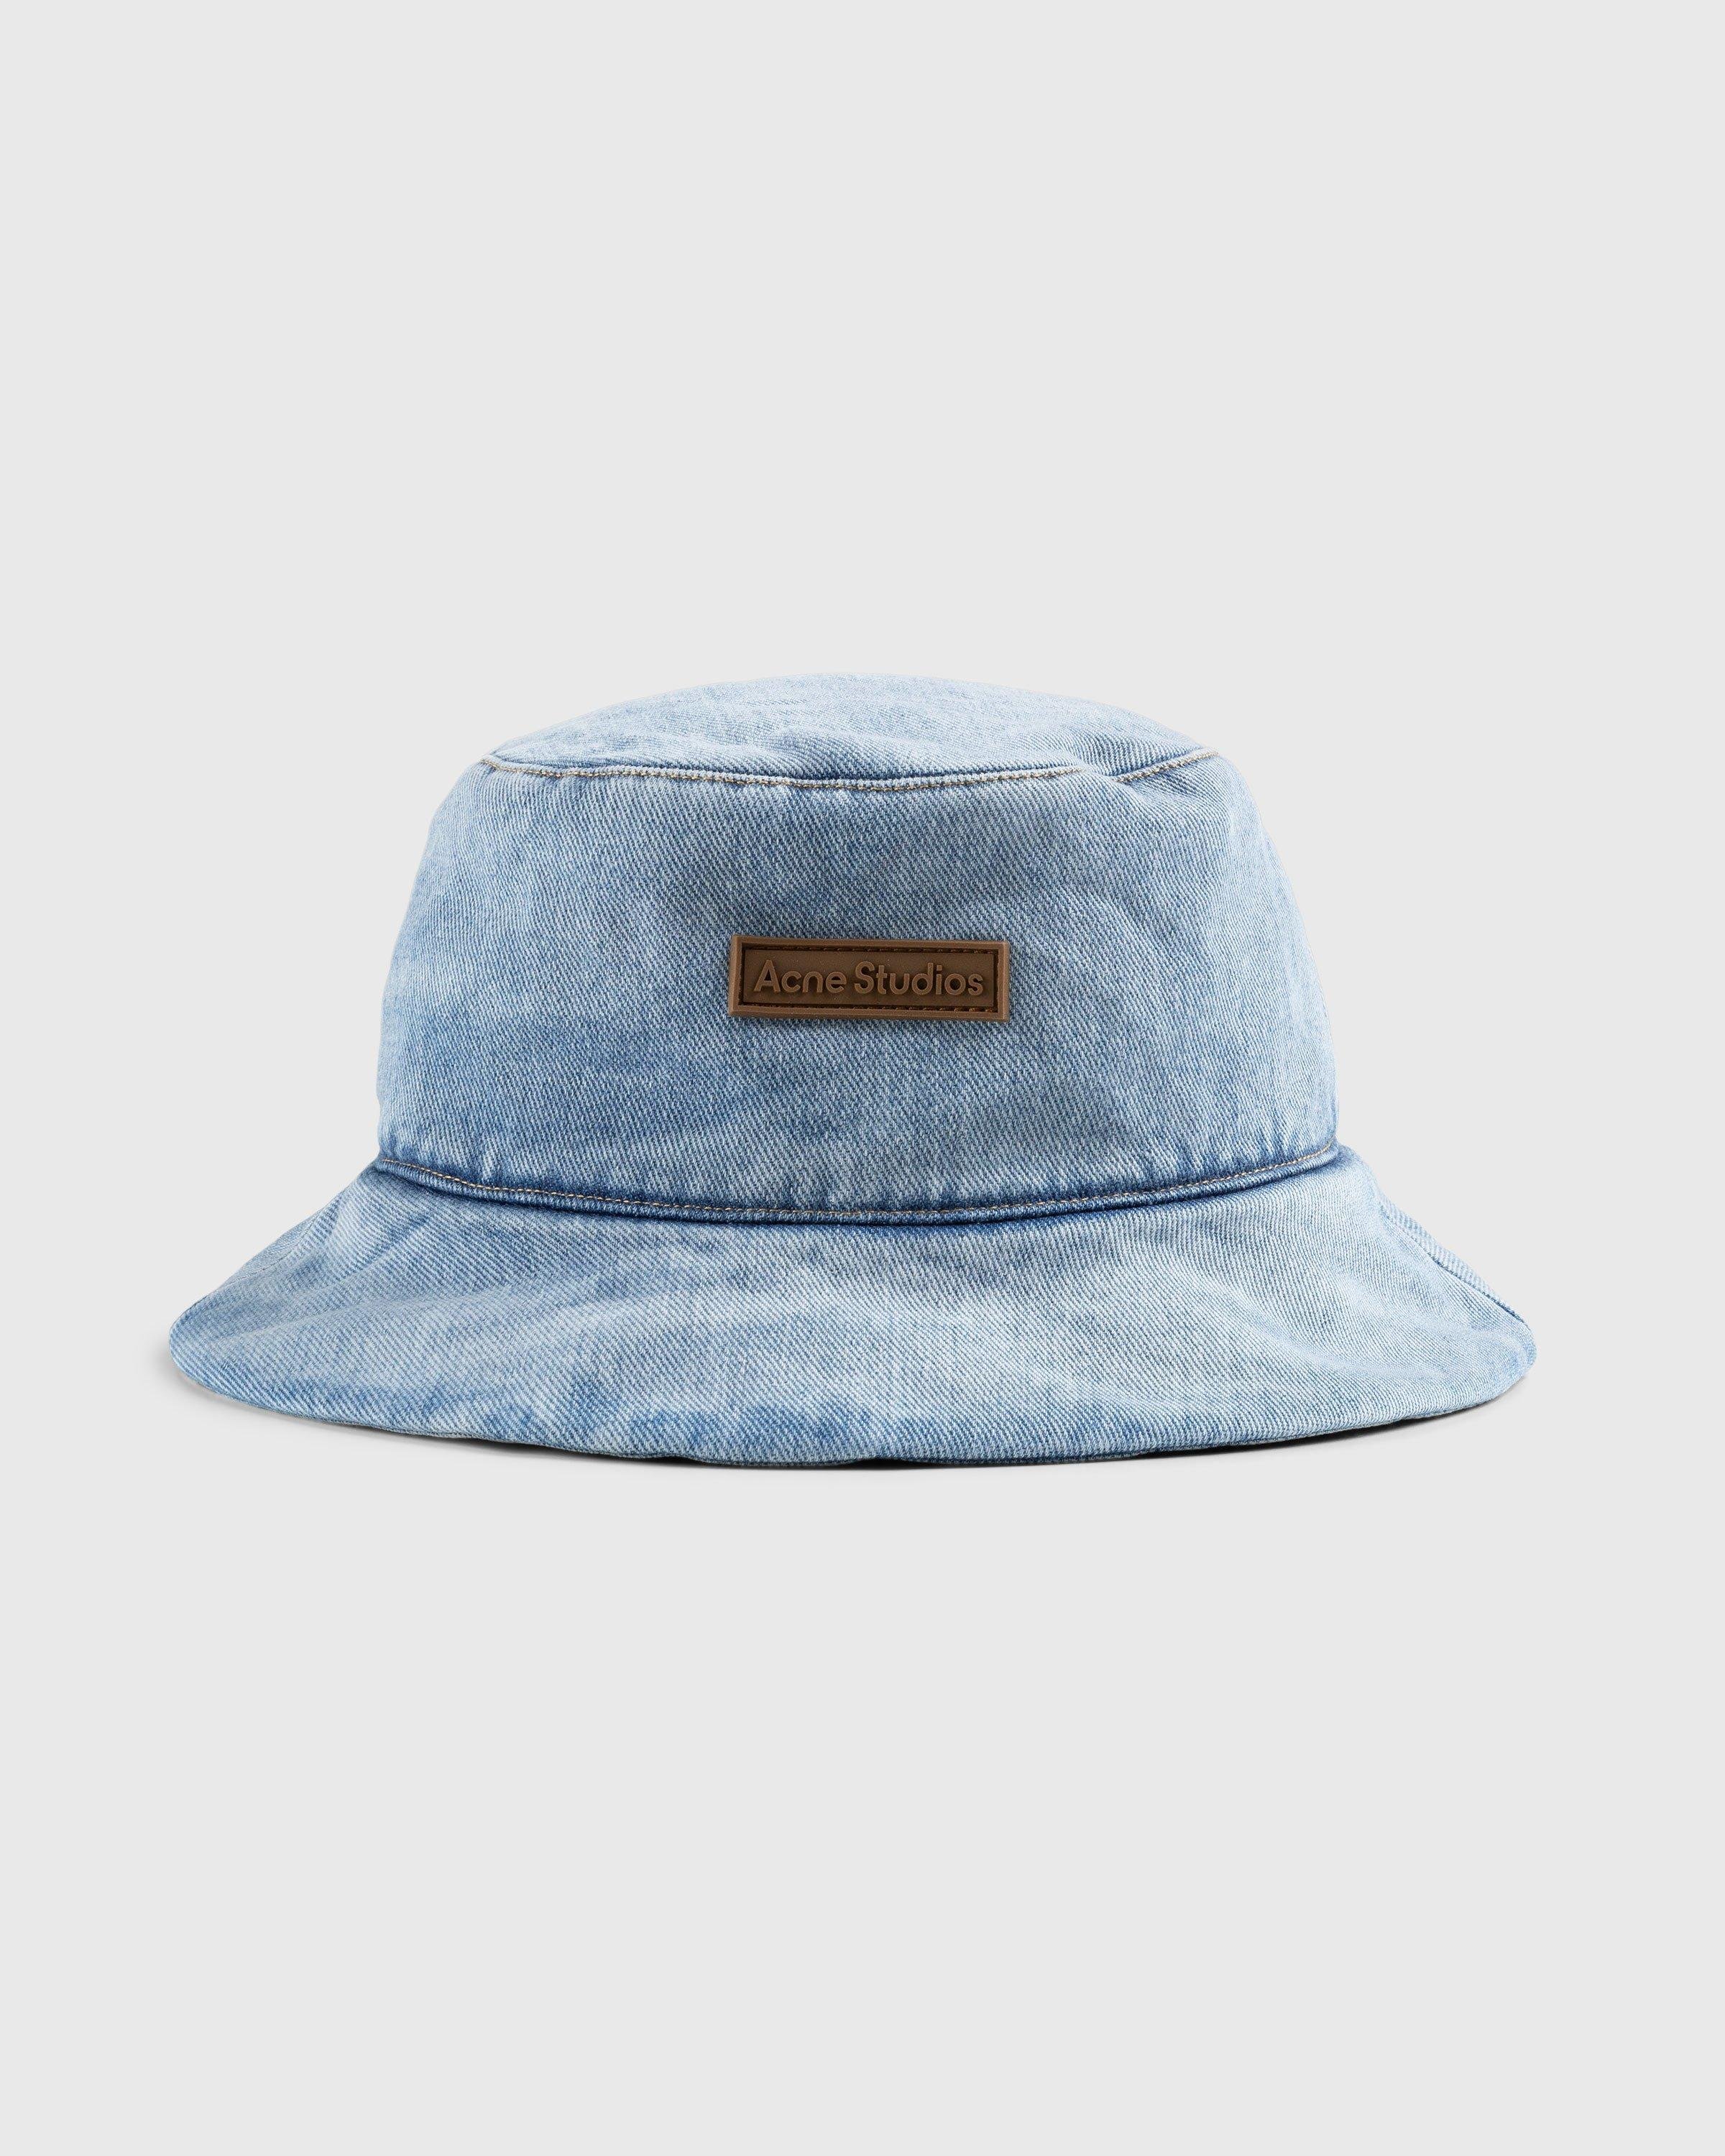 Acne StudiosPadded Denim Bucket Hat Blue by HIGHSNOBIETY